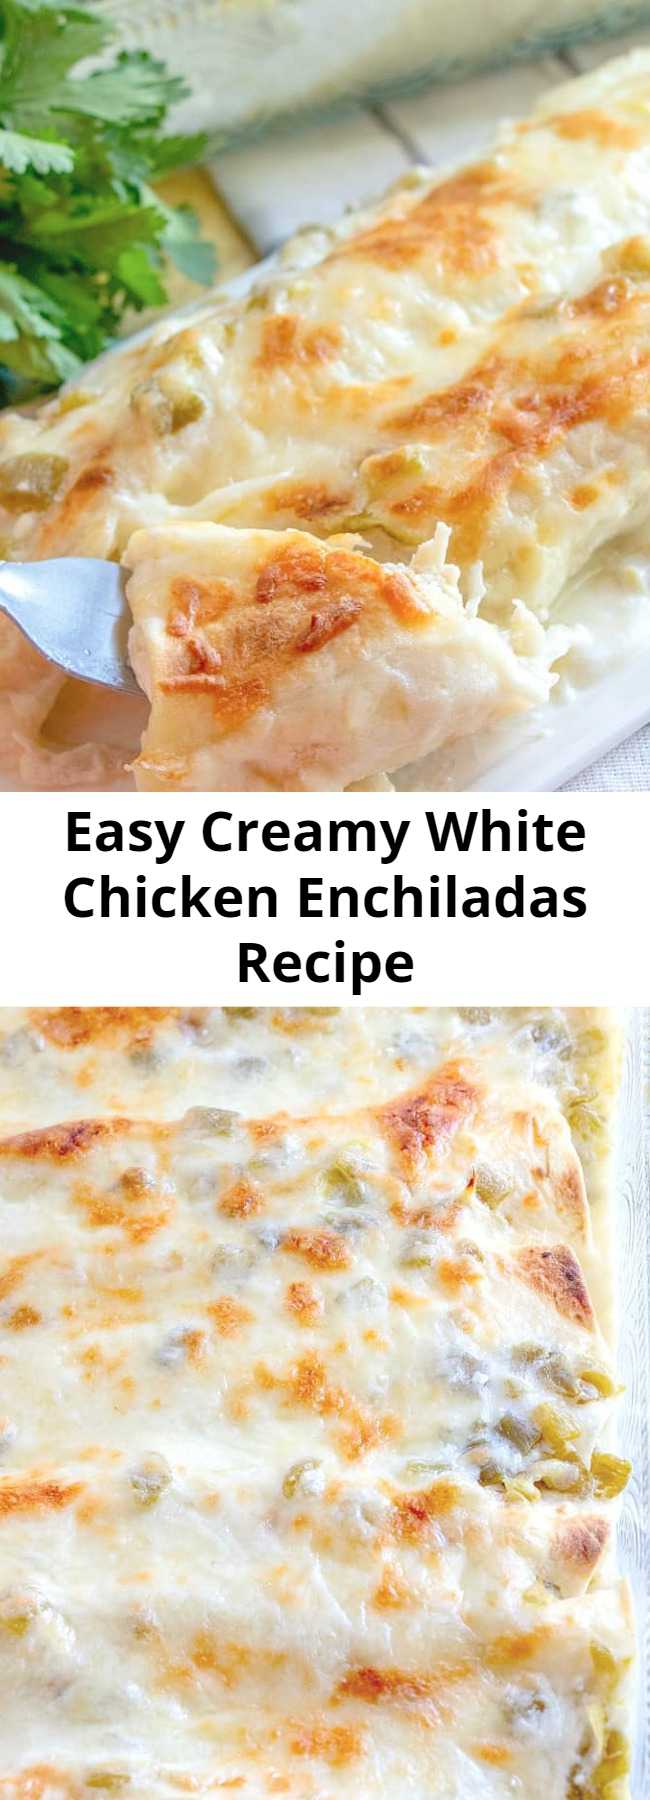 Easy Creamy White Chicken Enchiladas Recipe - White Chicken Enchiladas are made with flour tortillas, shredded chicken, mozzarella, green chiles and a delicious white cream sauce!